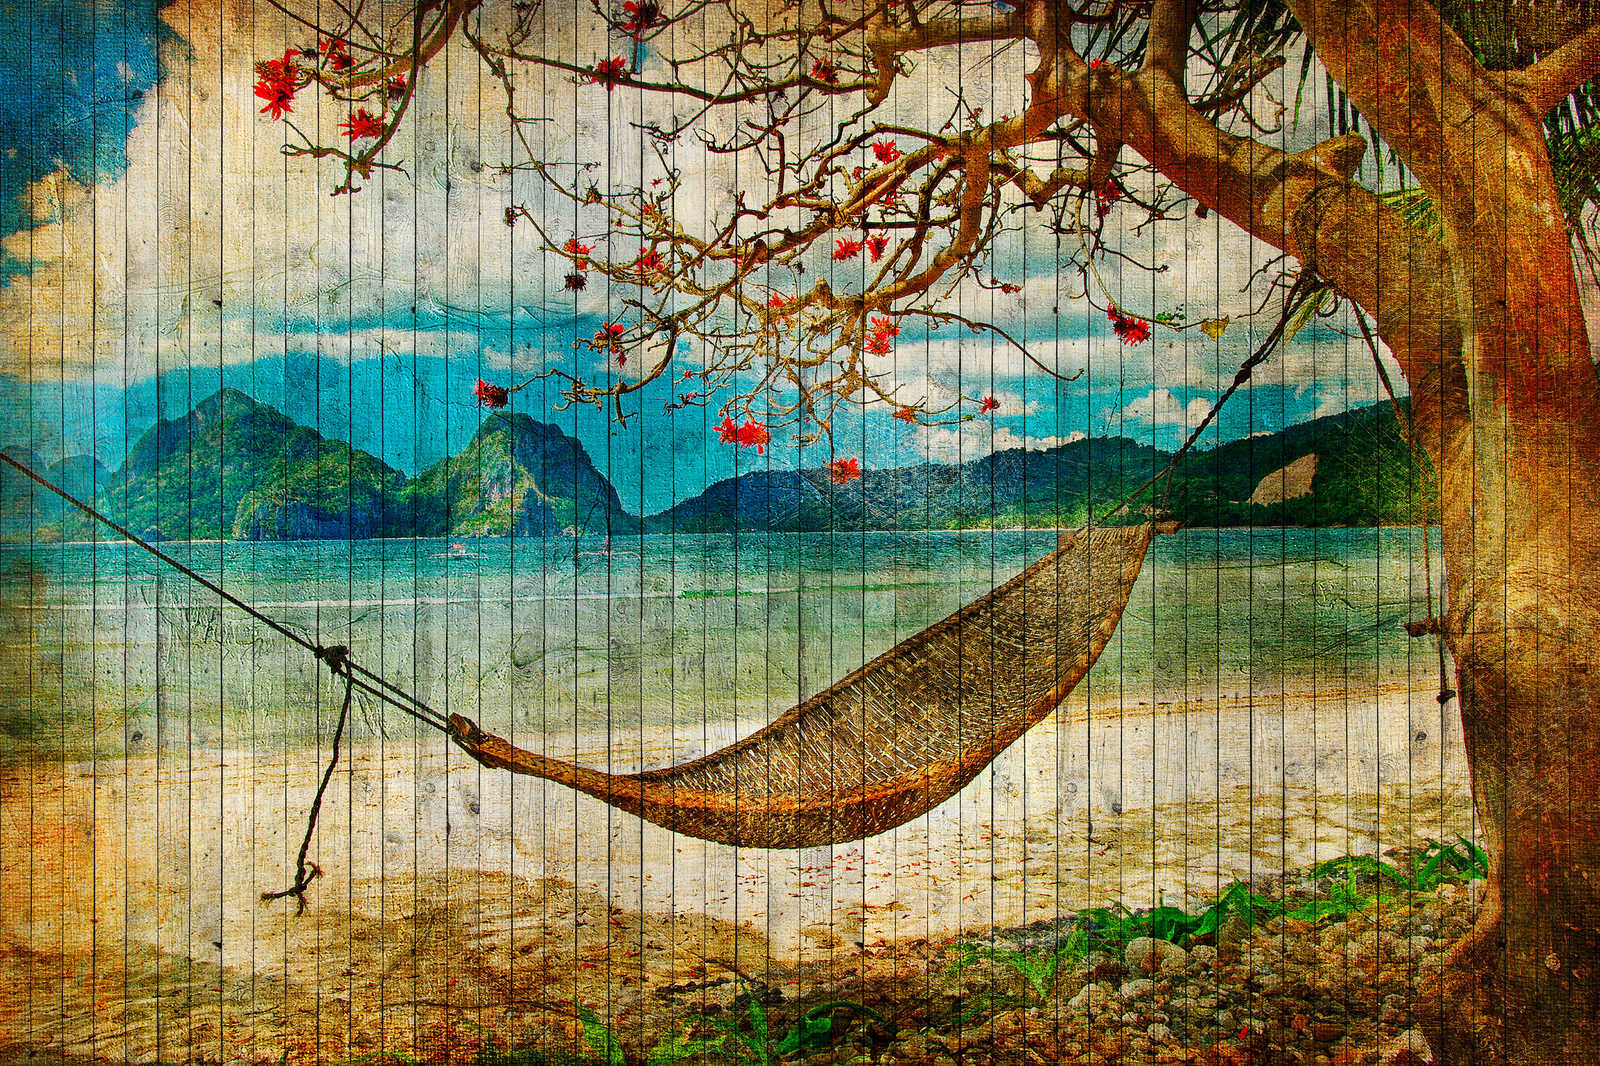             Tahití 2 - Lienzo en panel de madera óptica con hamaca y playa de los Mares del Sur - 0,90 m x 0,60 m
        